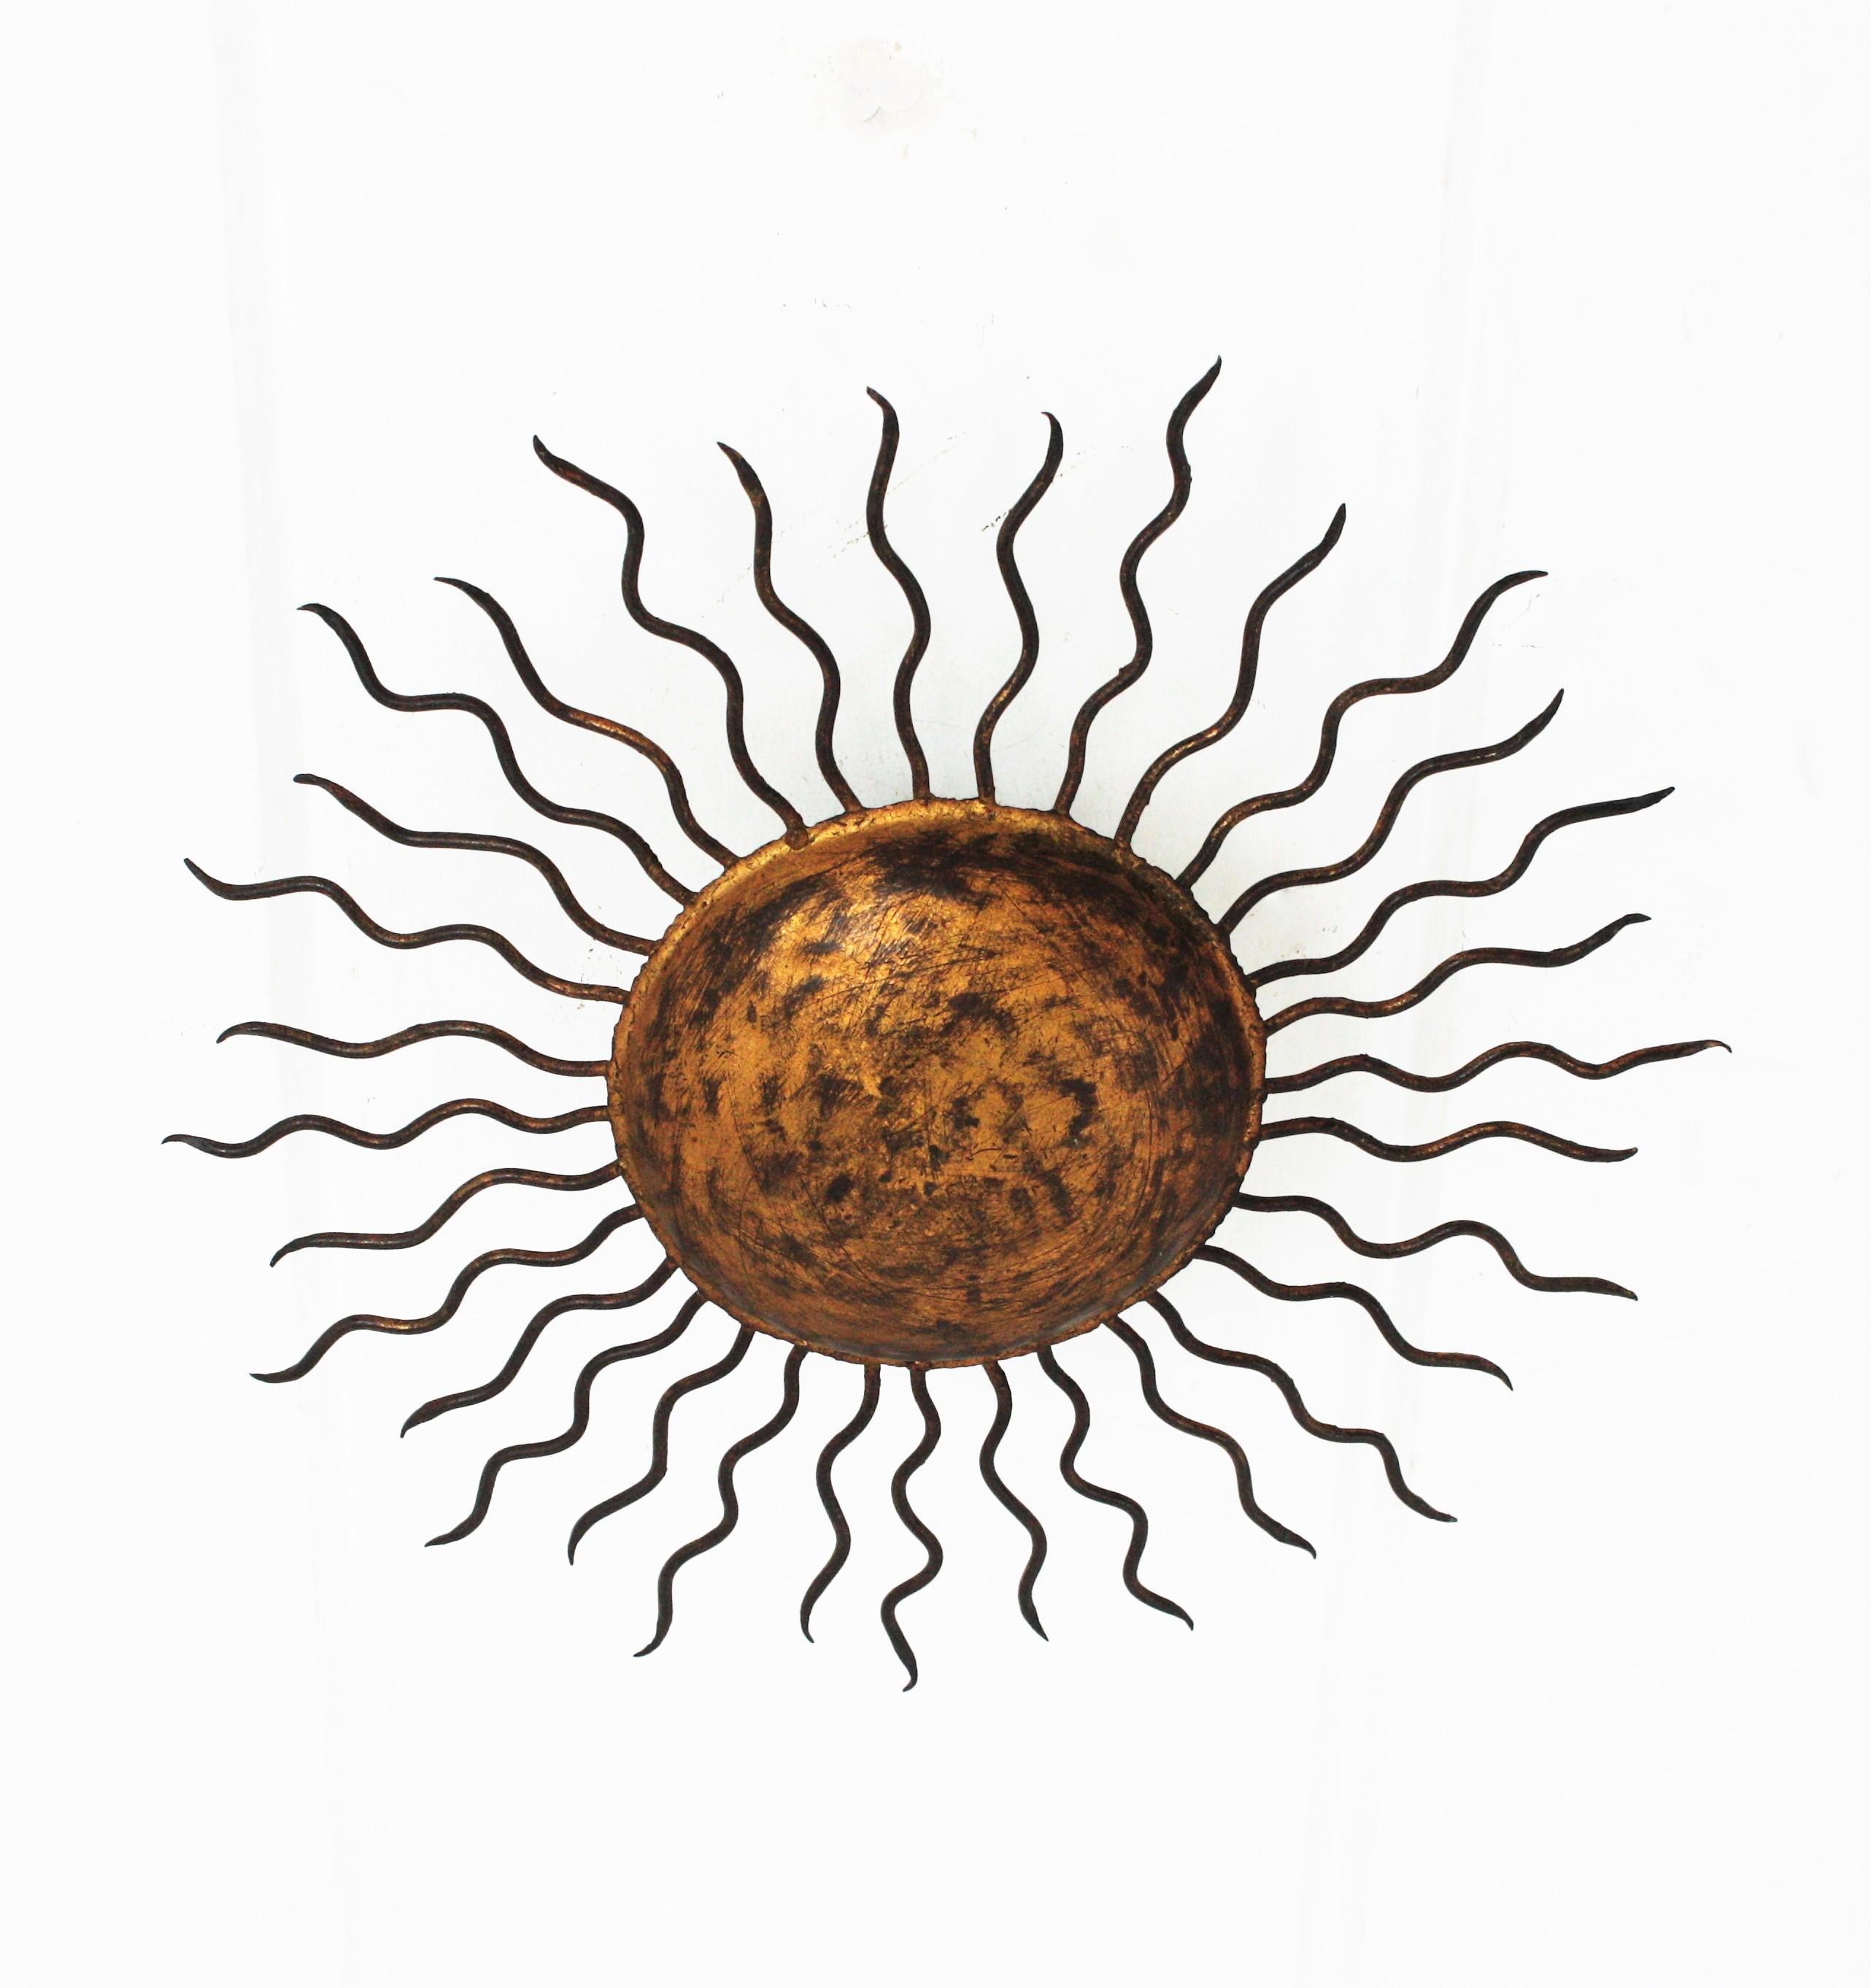 Handgehämmerte Sonnenschliff-Leuchte aus vergoldetem Eisen mit brutalistischen Akzenten. Reichhaltig verziert mit handgehämmerten Marken, Spanien, 1950er Jahre.
Es hat gelockte Eisenstrahlen in zwei Größen, die eine zentrale große Kugel umgeben. Sie